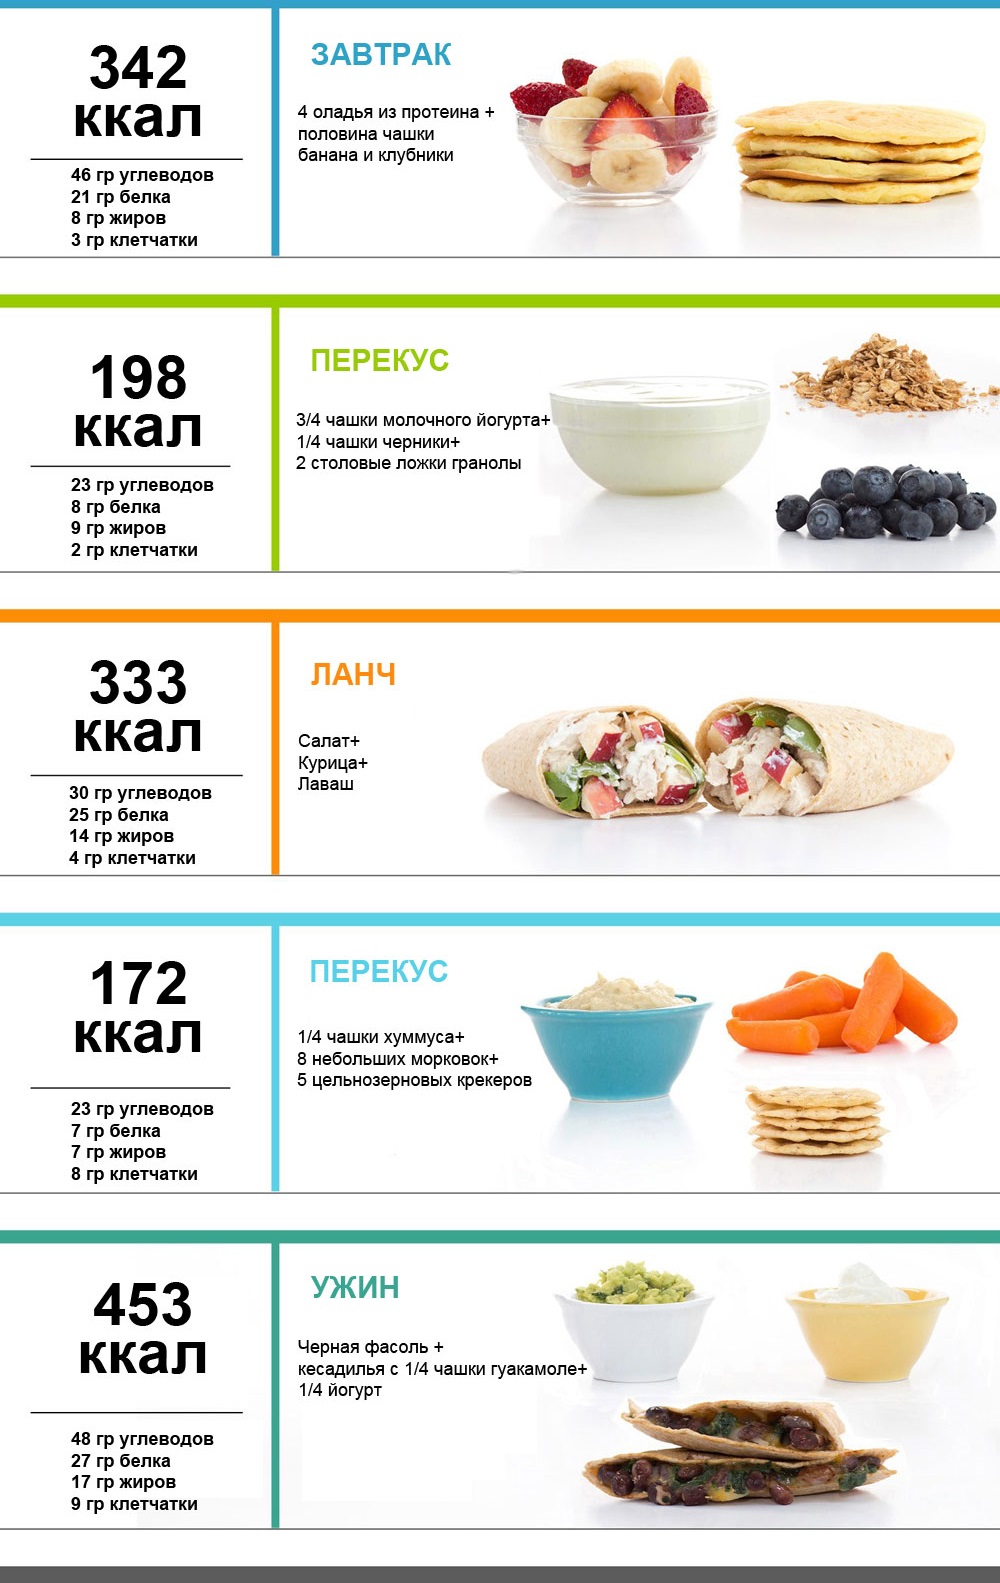 PP-Menü für eine Woche zur Gewichtsreduktion. Tabelle mit Rezepten aus einfachen Produkten, eine ungefähre Diät für 1000, 1200, 1500 Kalorien pro Tag